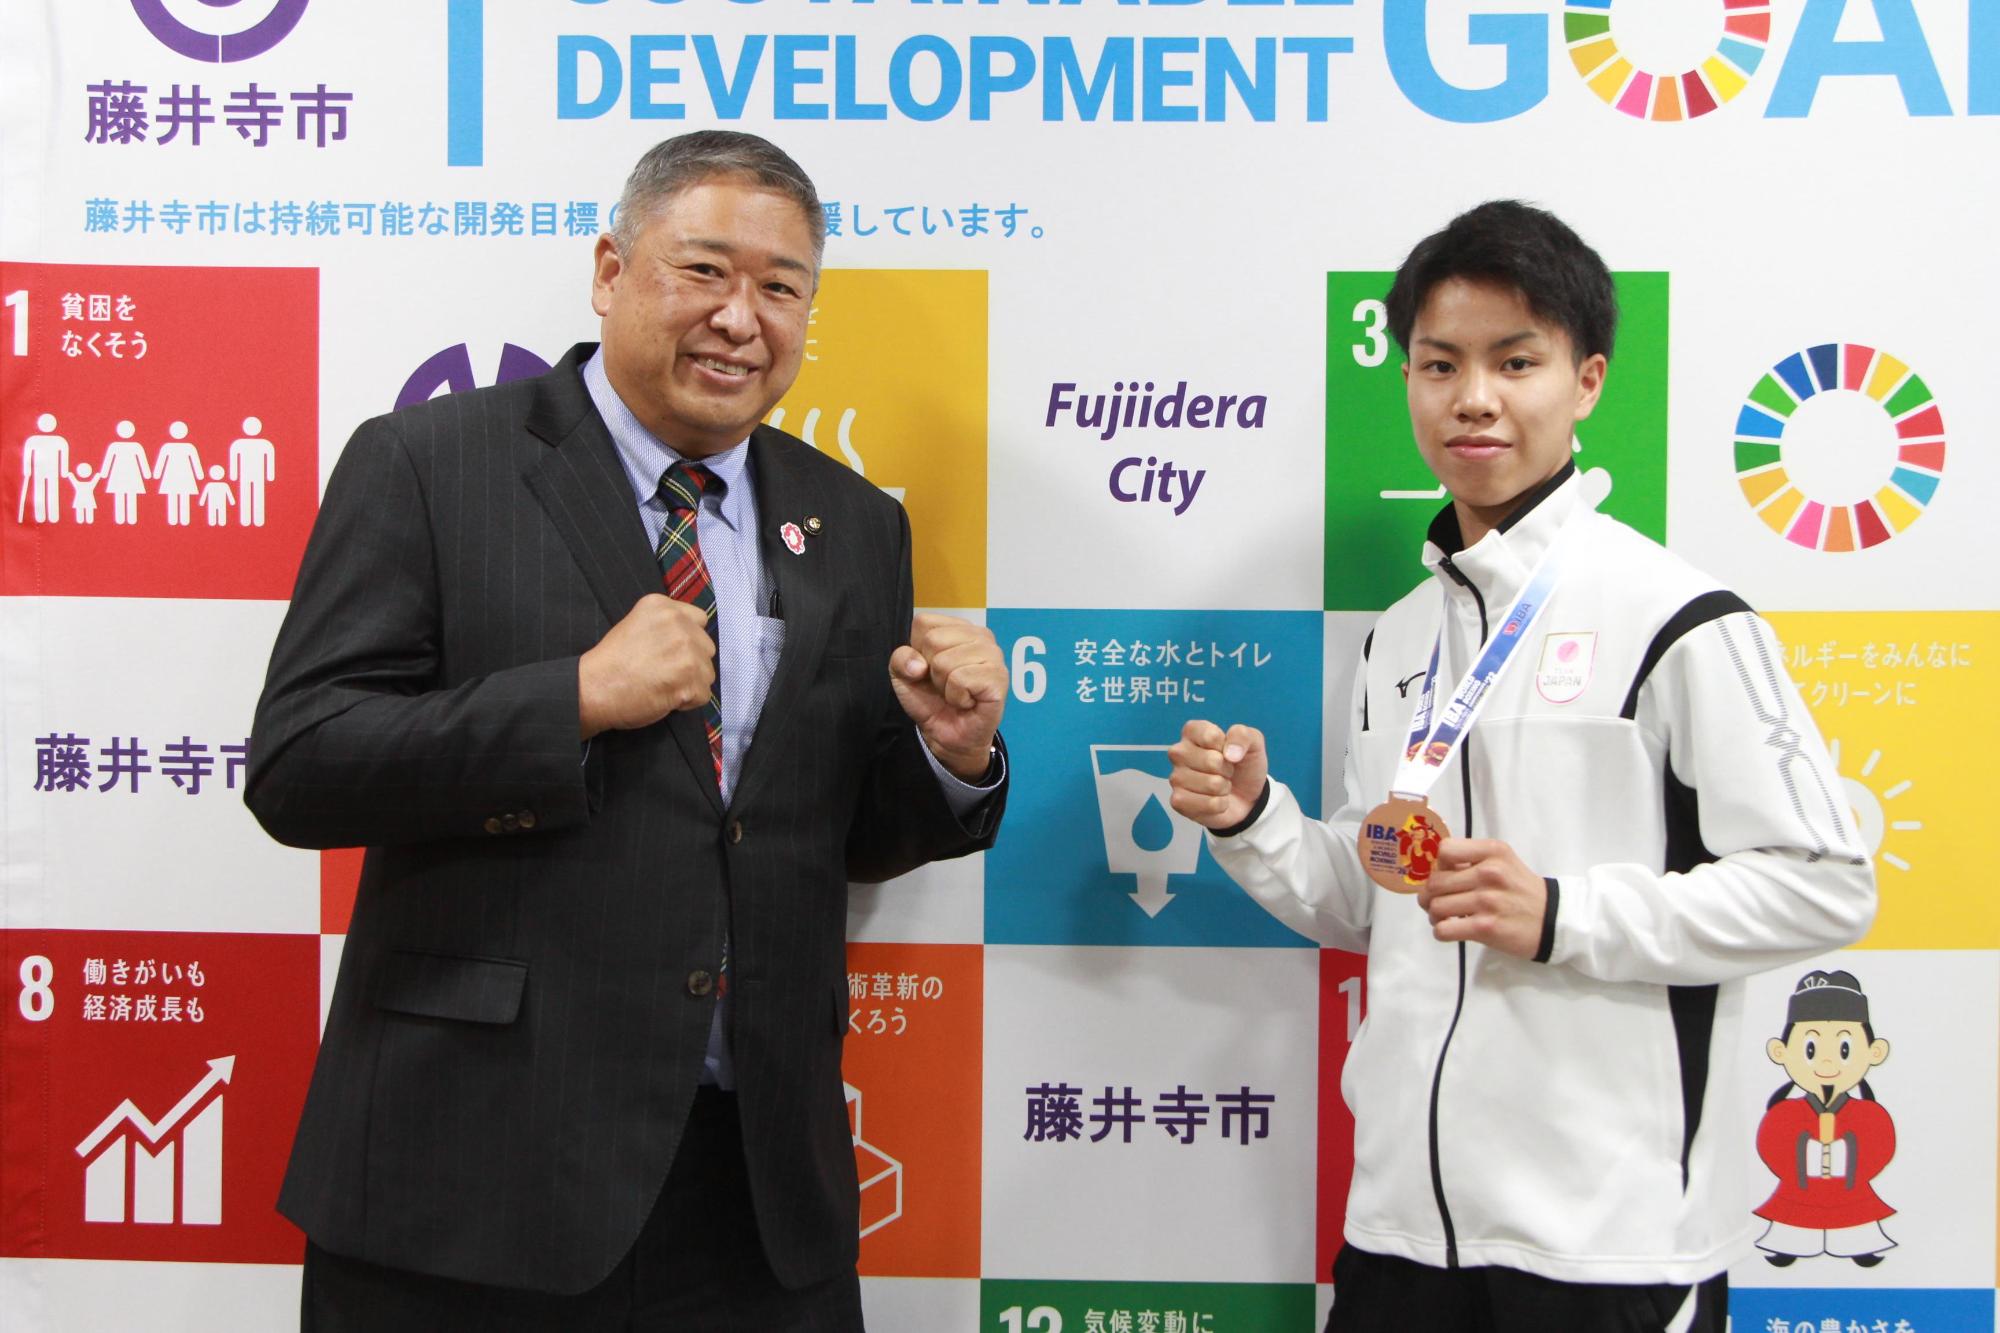 ボクシング世界ユース選手権3位に入賞した山口瑠さんと岡田市長がファイティングポーズをしている写真